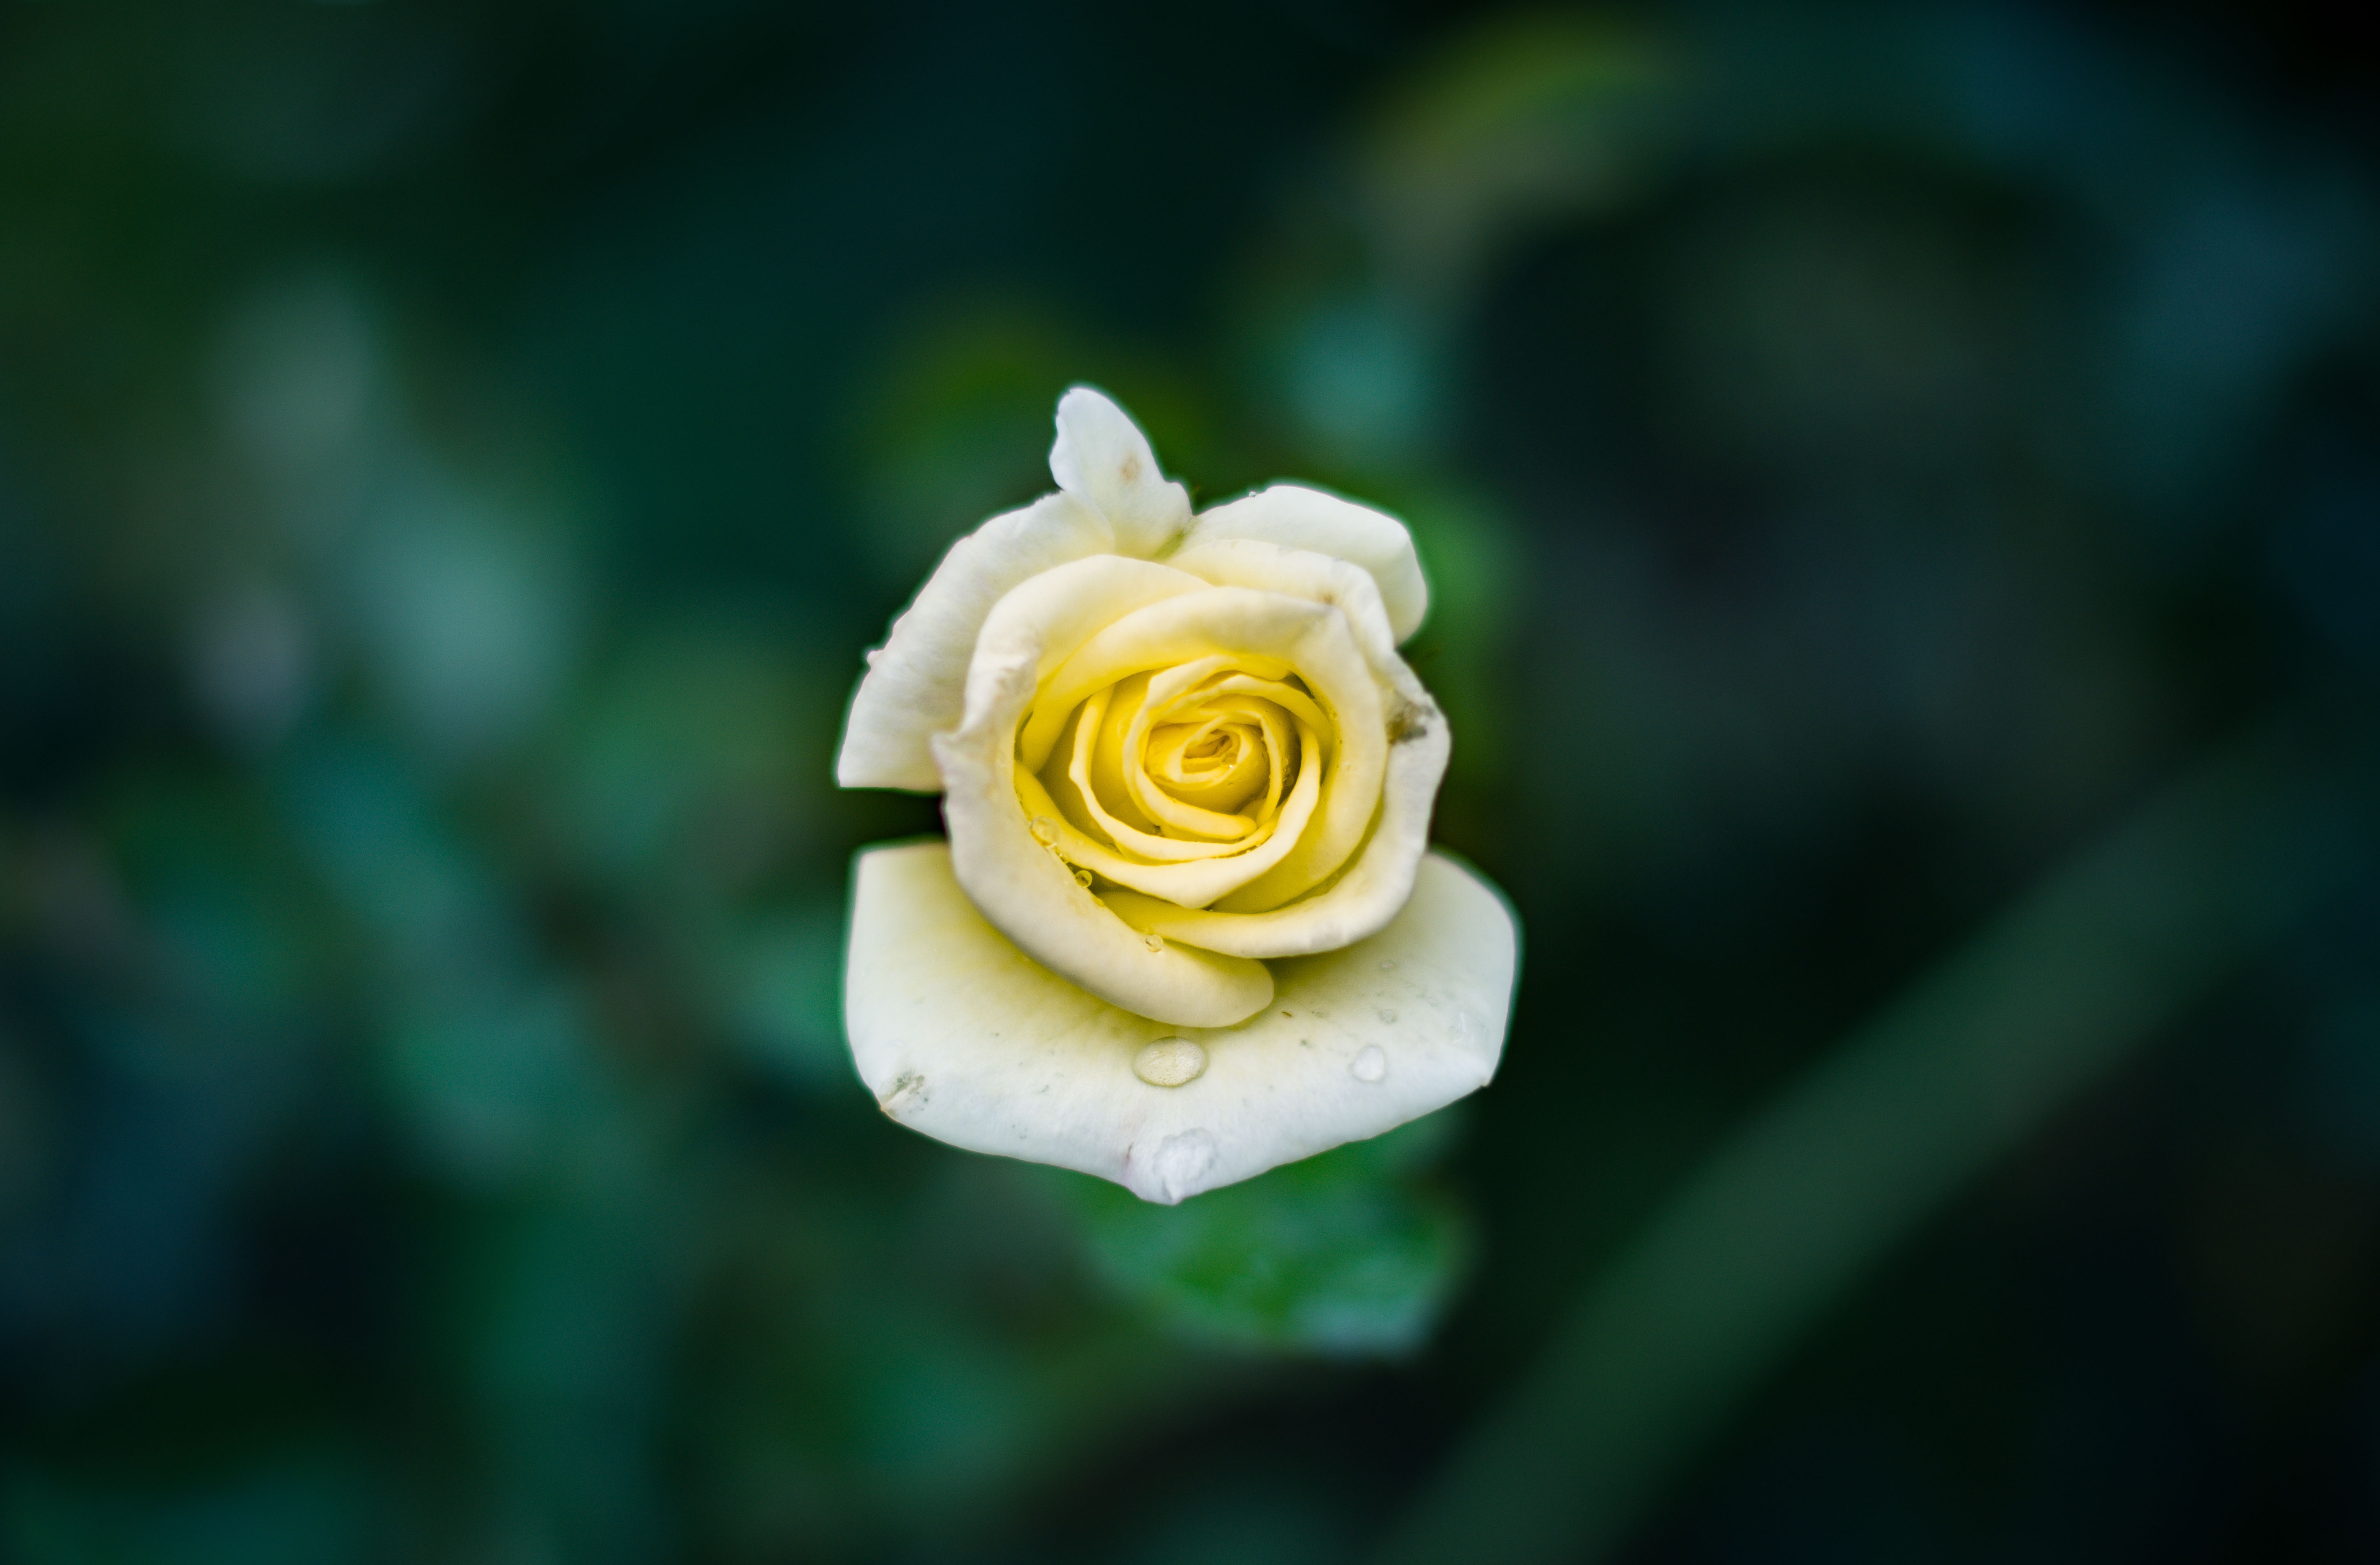 Бесплатное фото Одинокая белая роза на размытом зеленом фоне